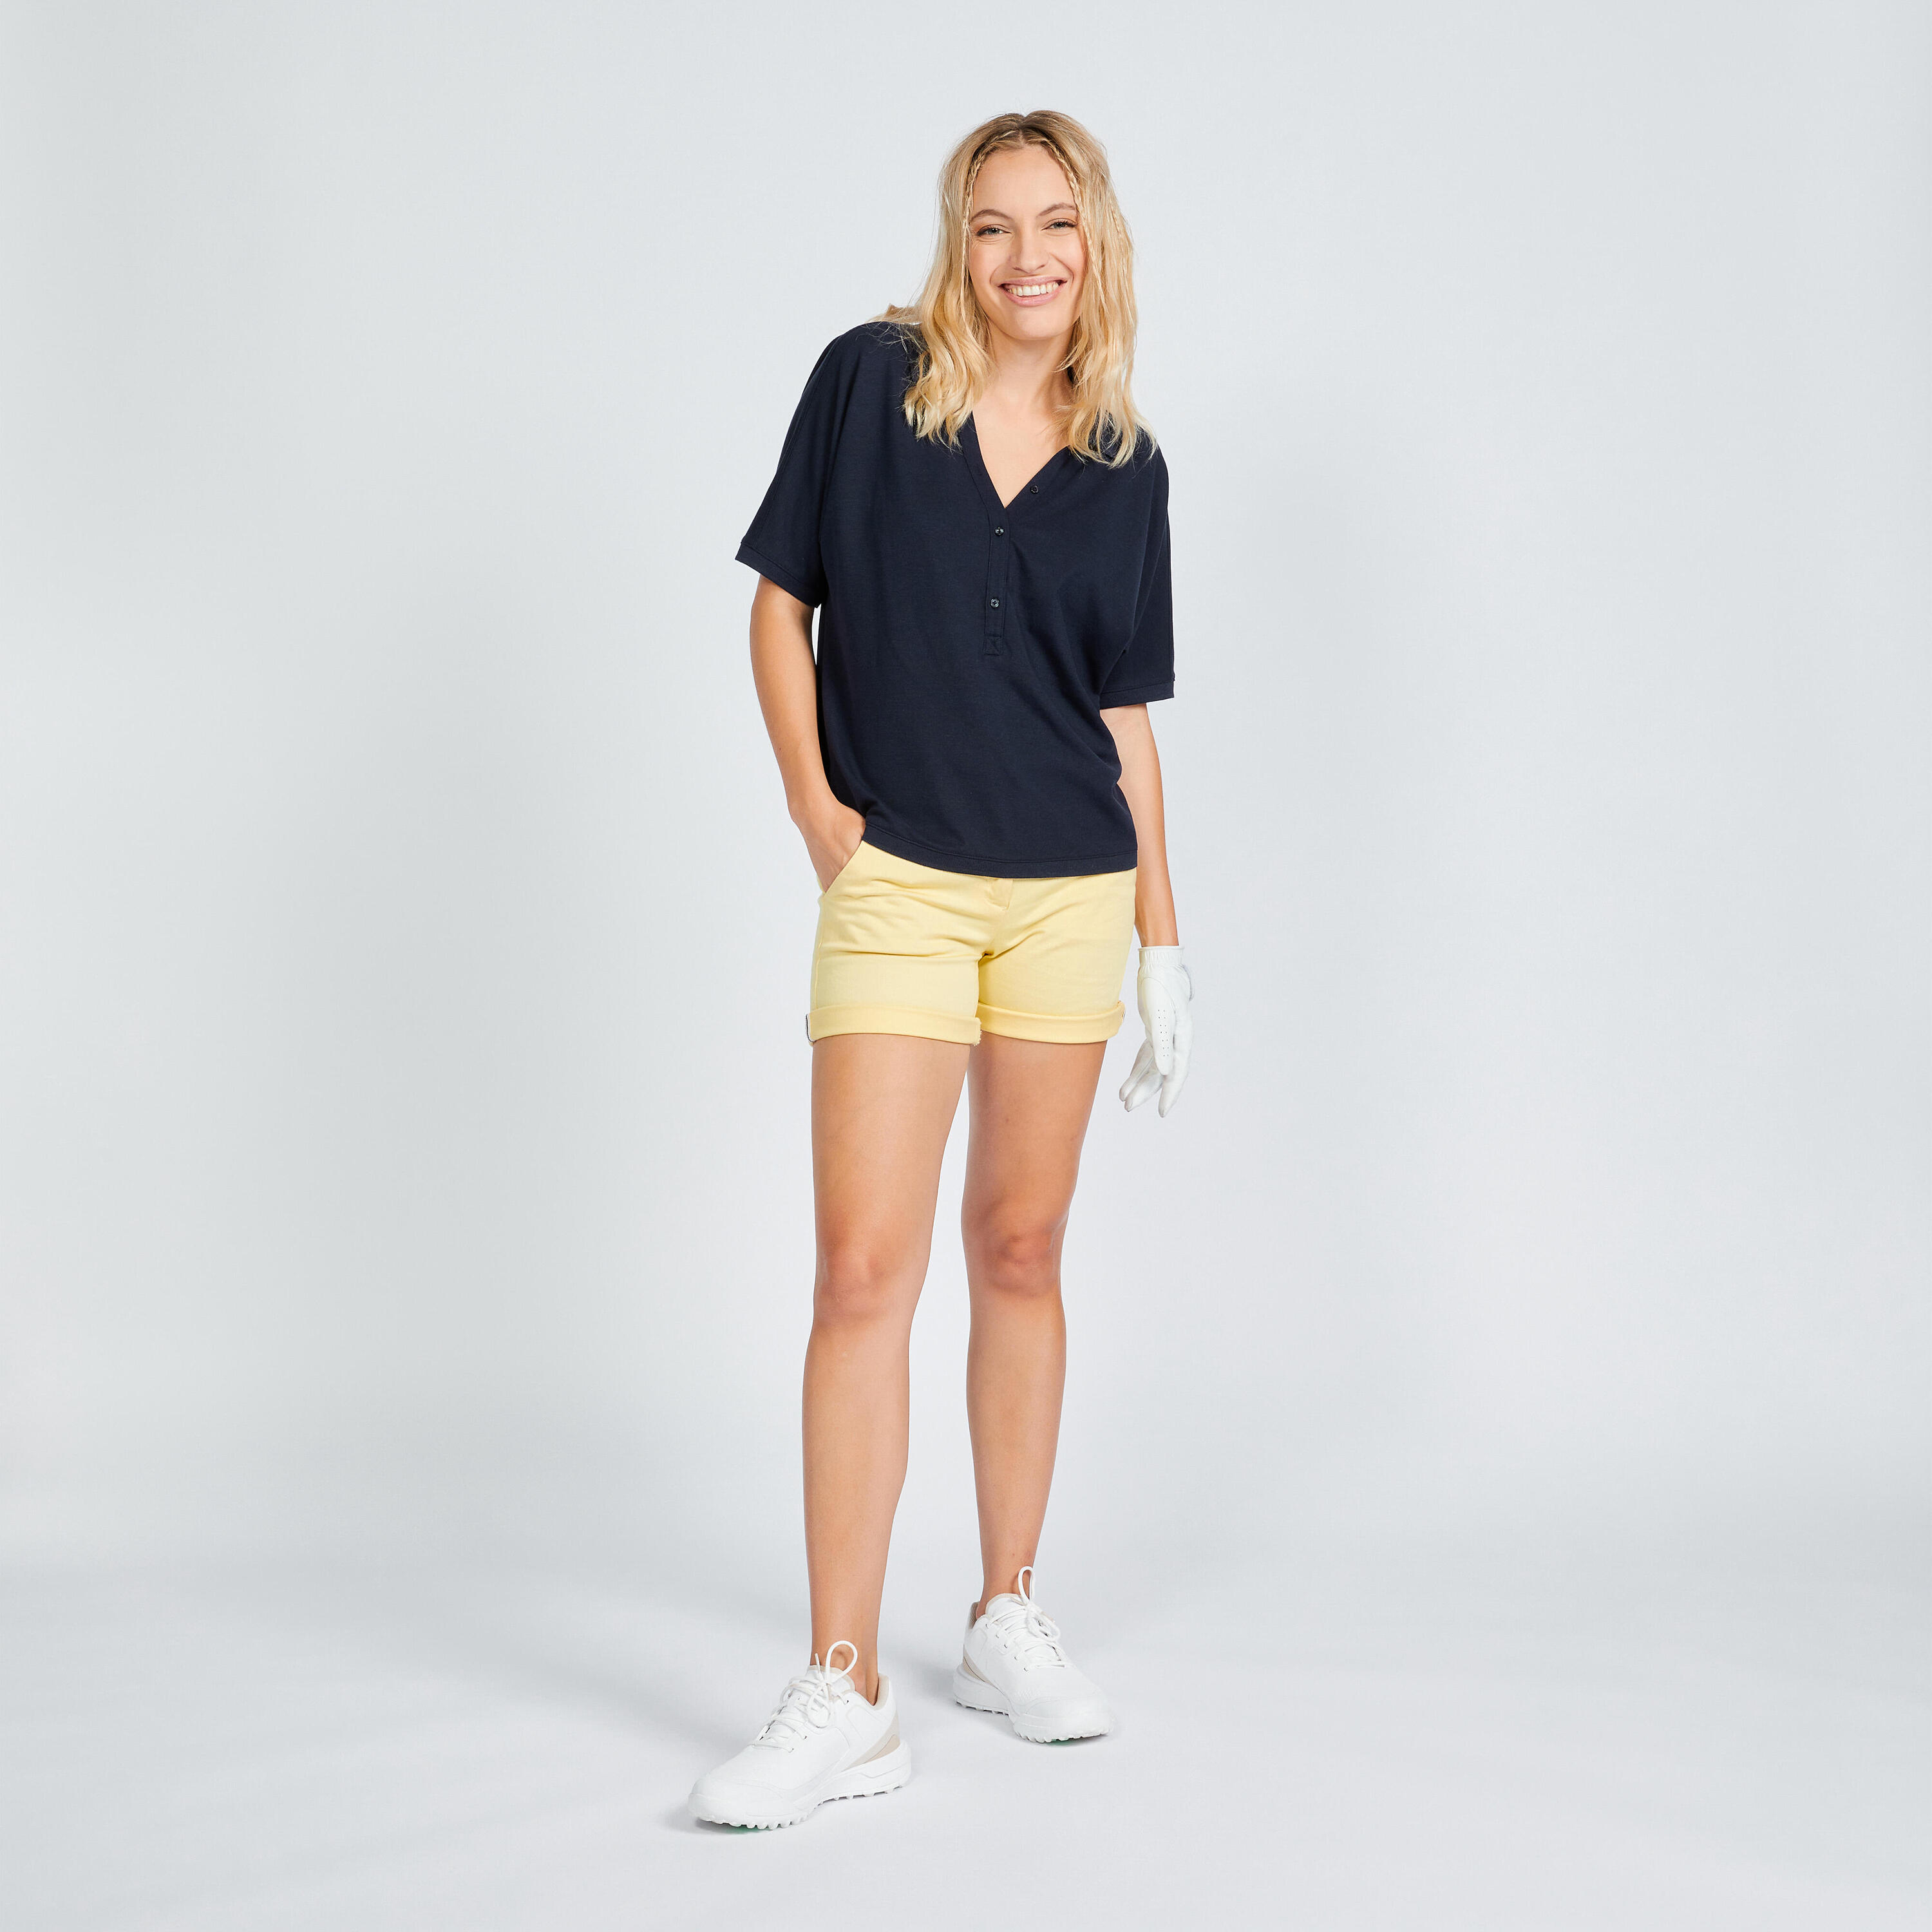 Women's golf short sleeve polo shirt - MW520 navy blue 2/6